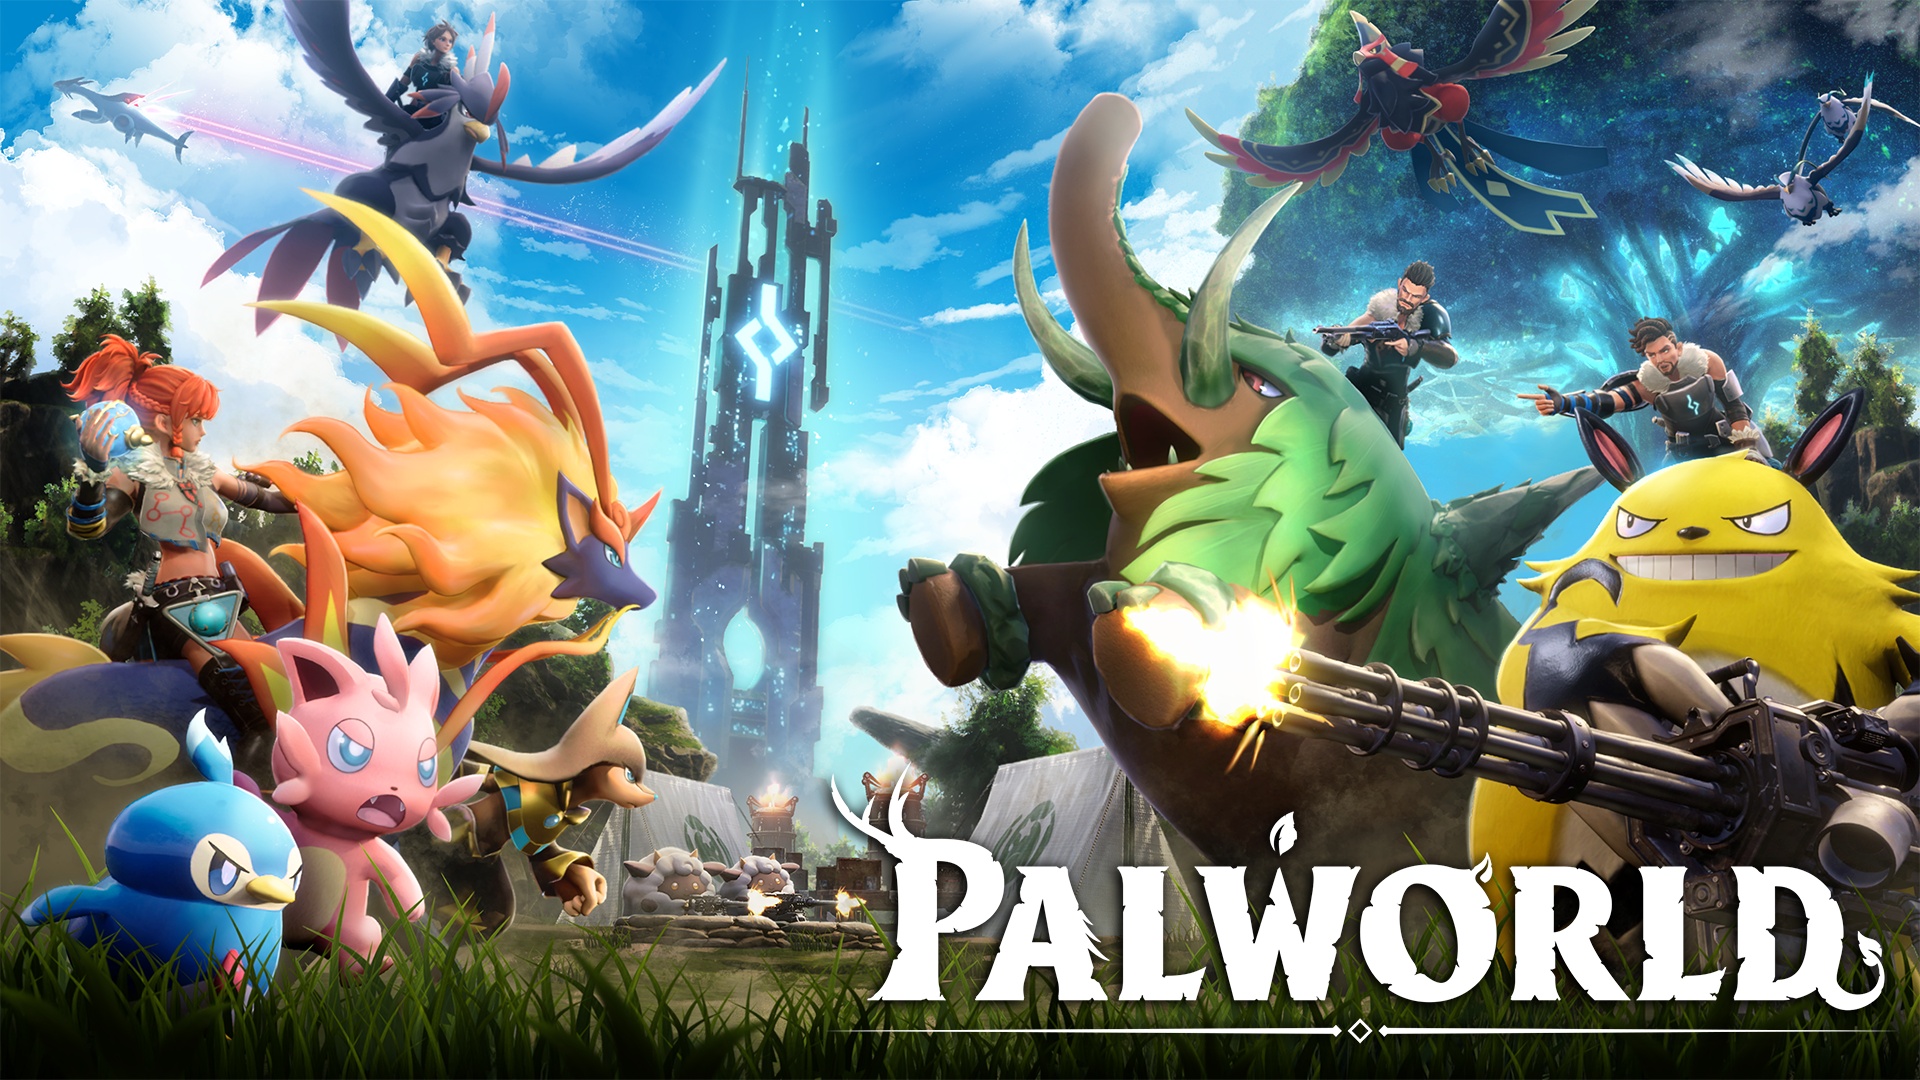 Palworld, un juego apodado como "Pokémon con armas", podría lanzarse en móviles image